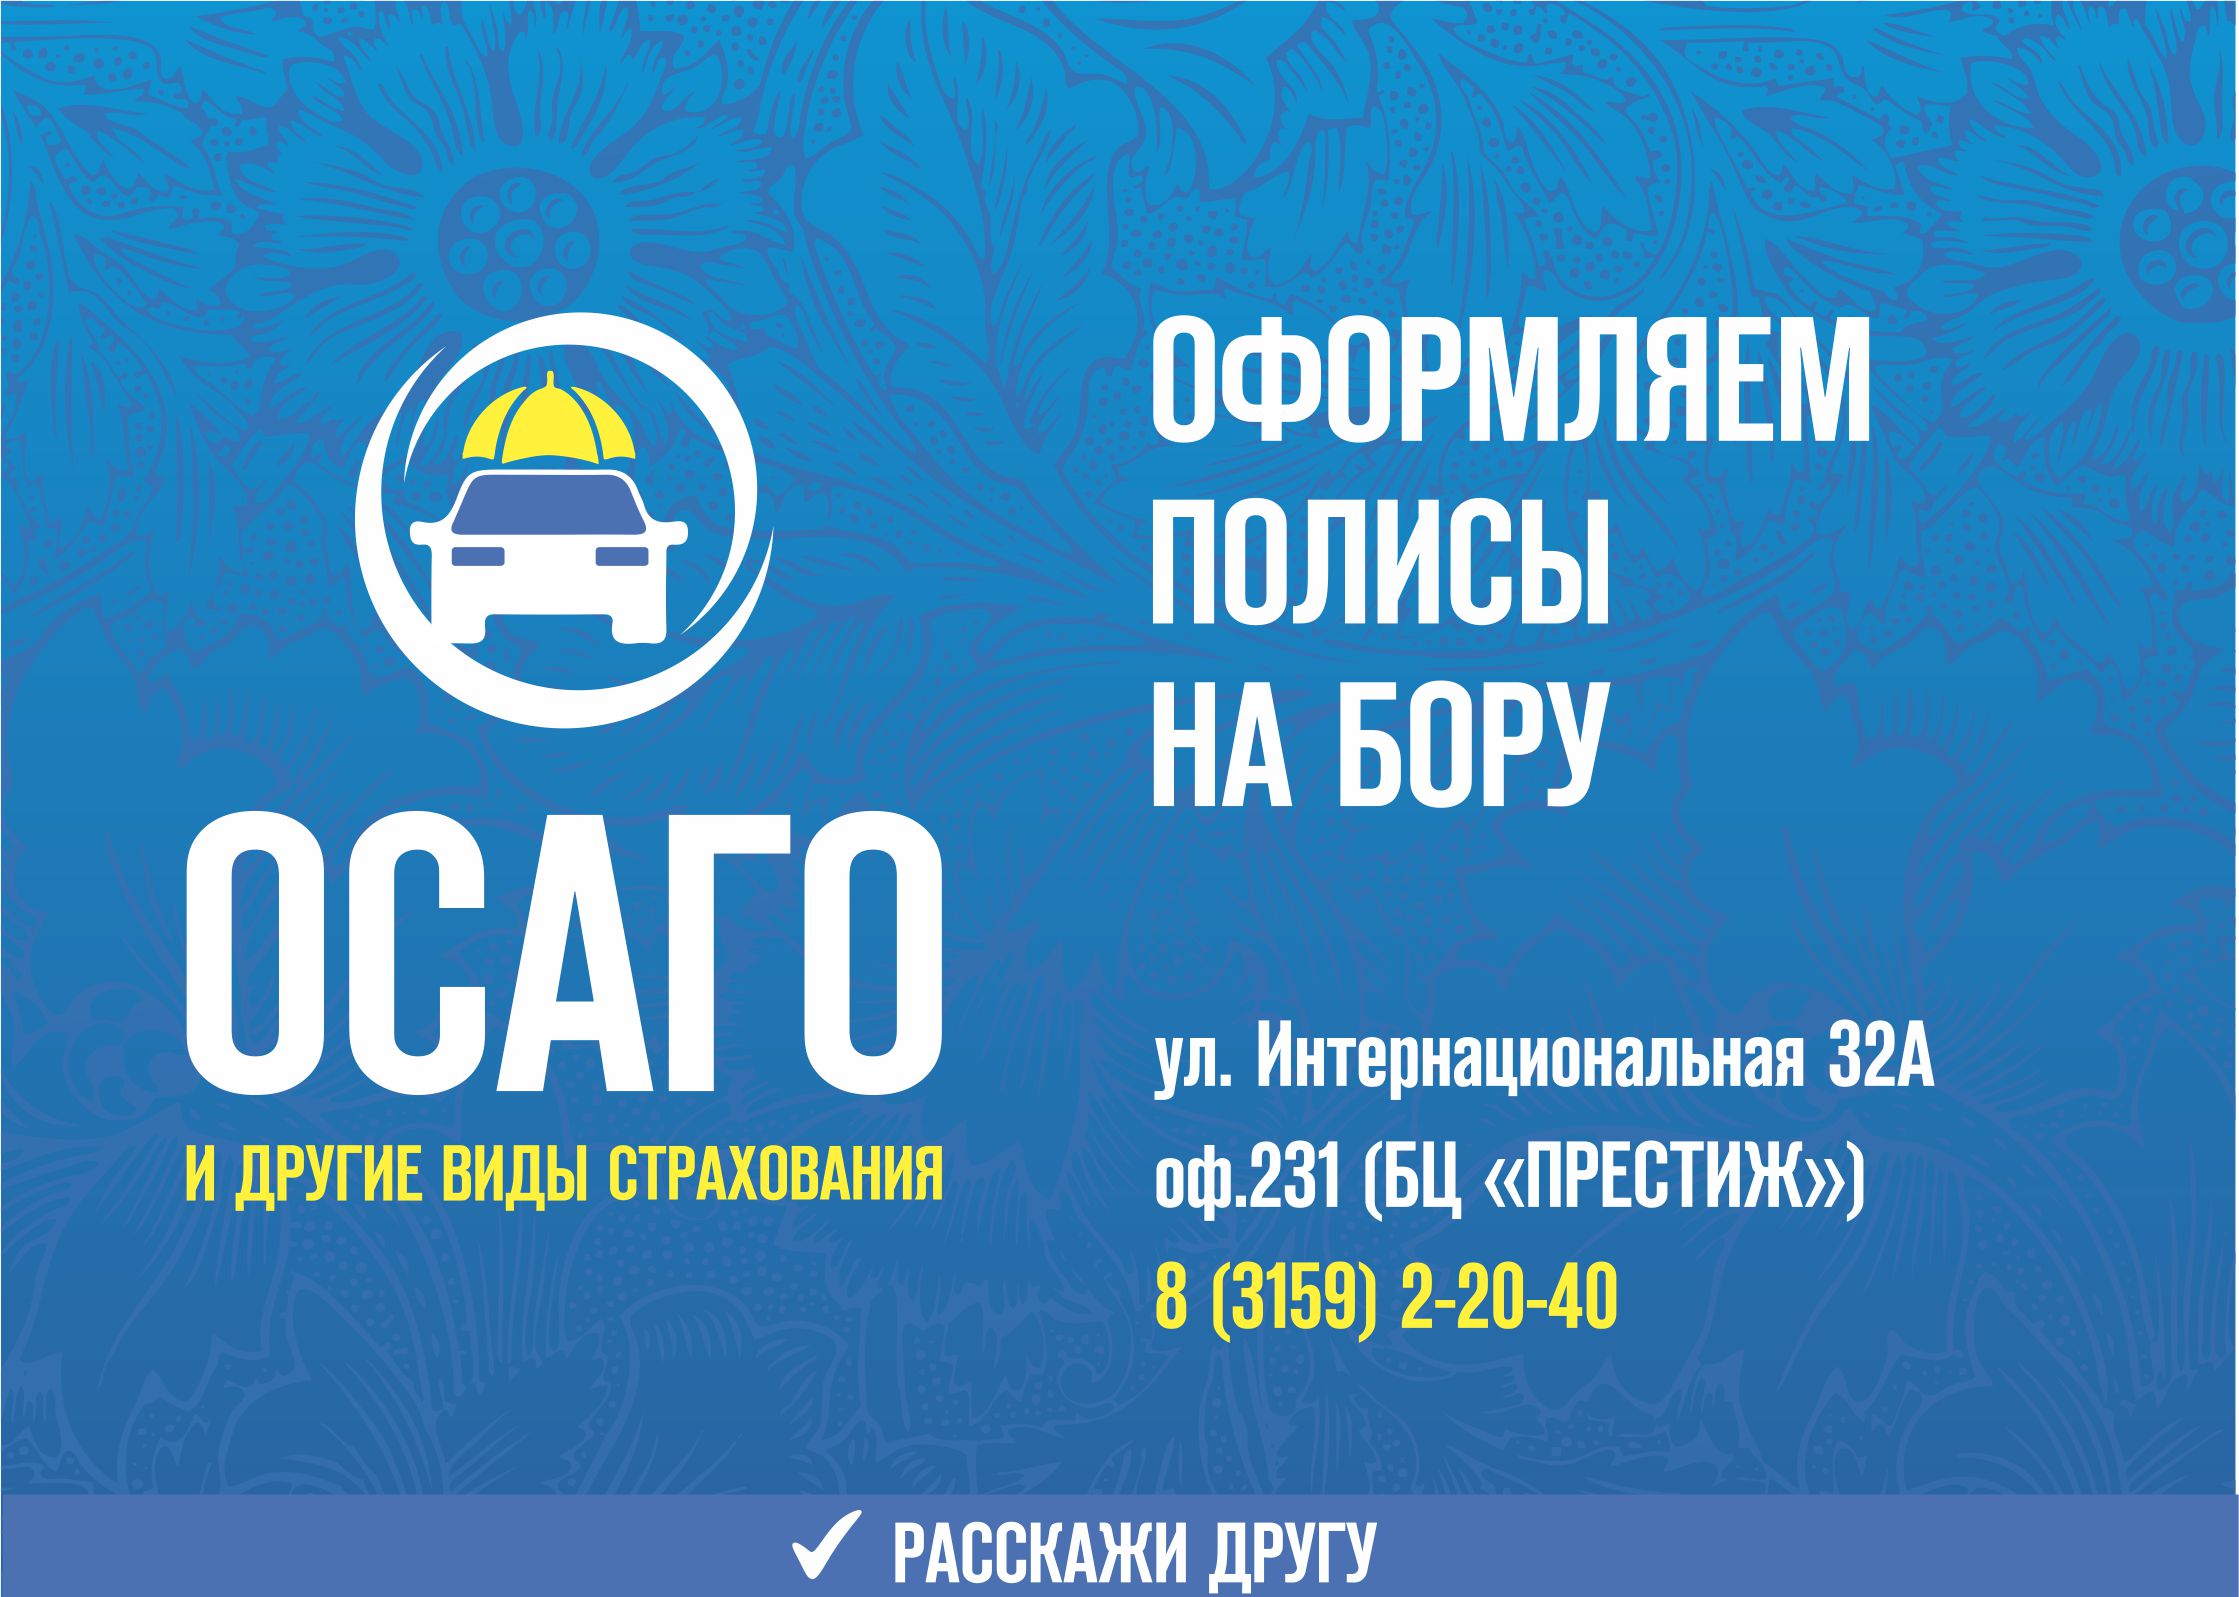 Купить полис ОСАГО в городе Бор Нижегородской области. Любой вид транспорта в короткие сроки.